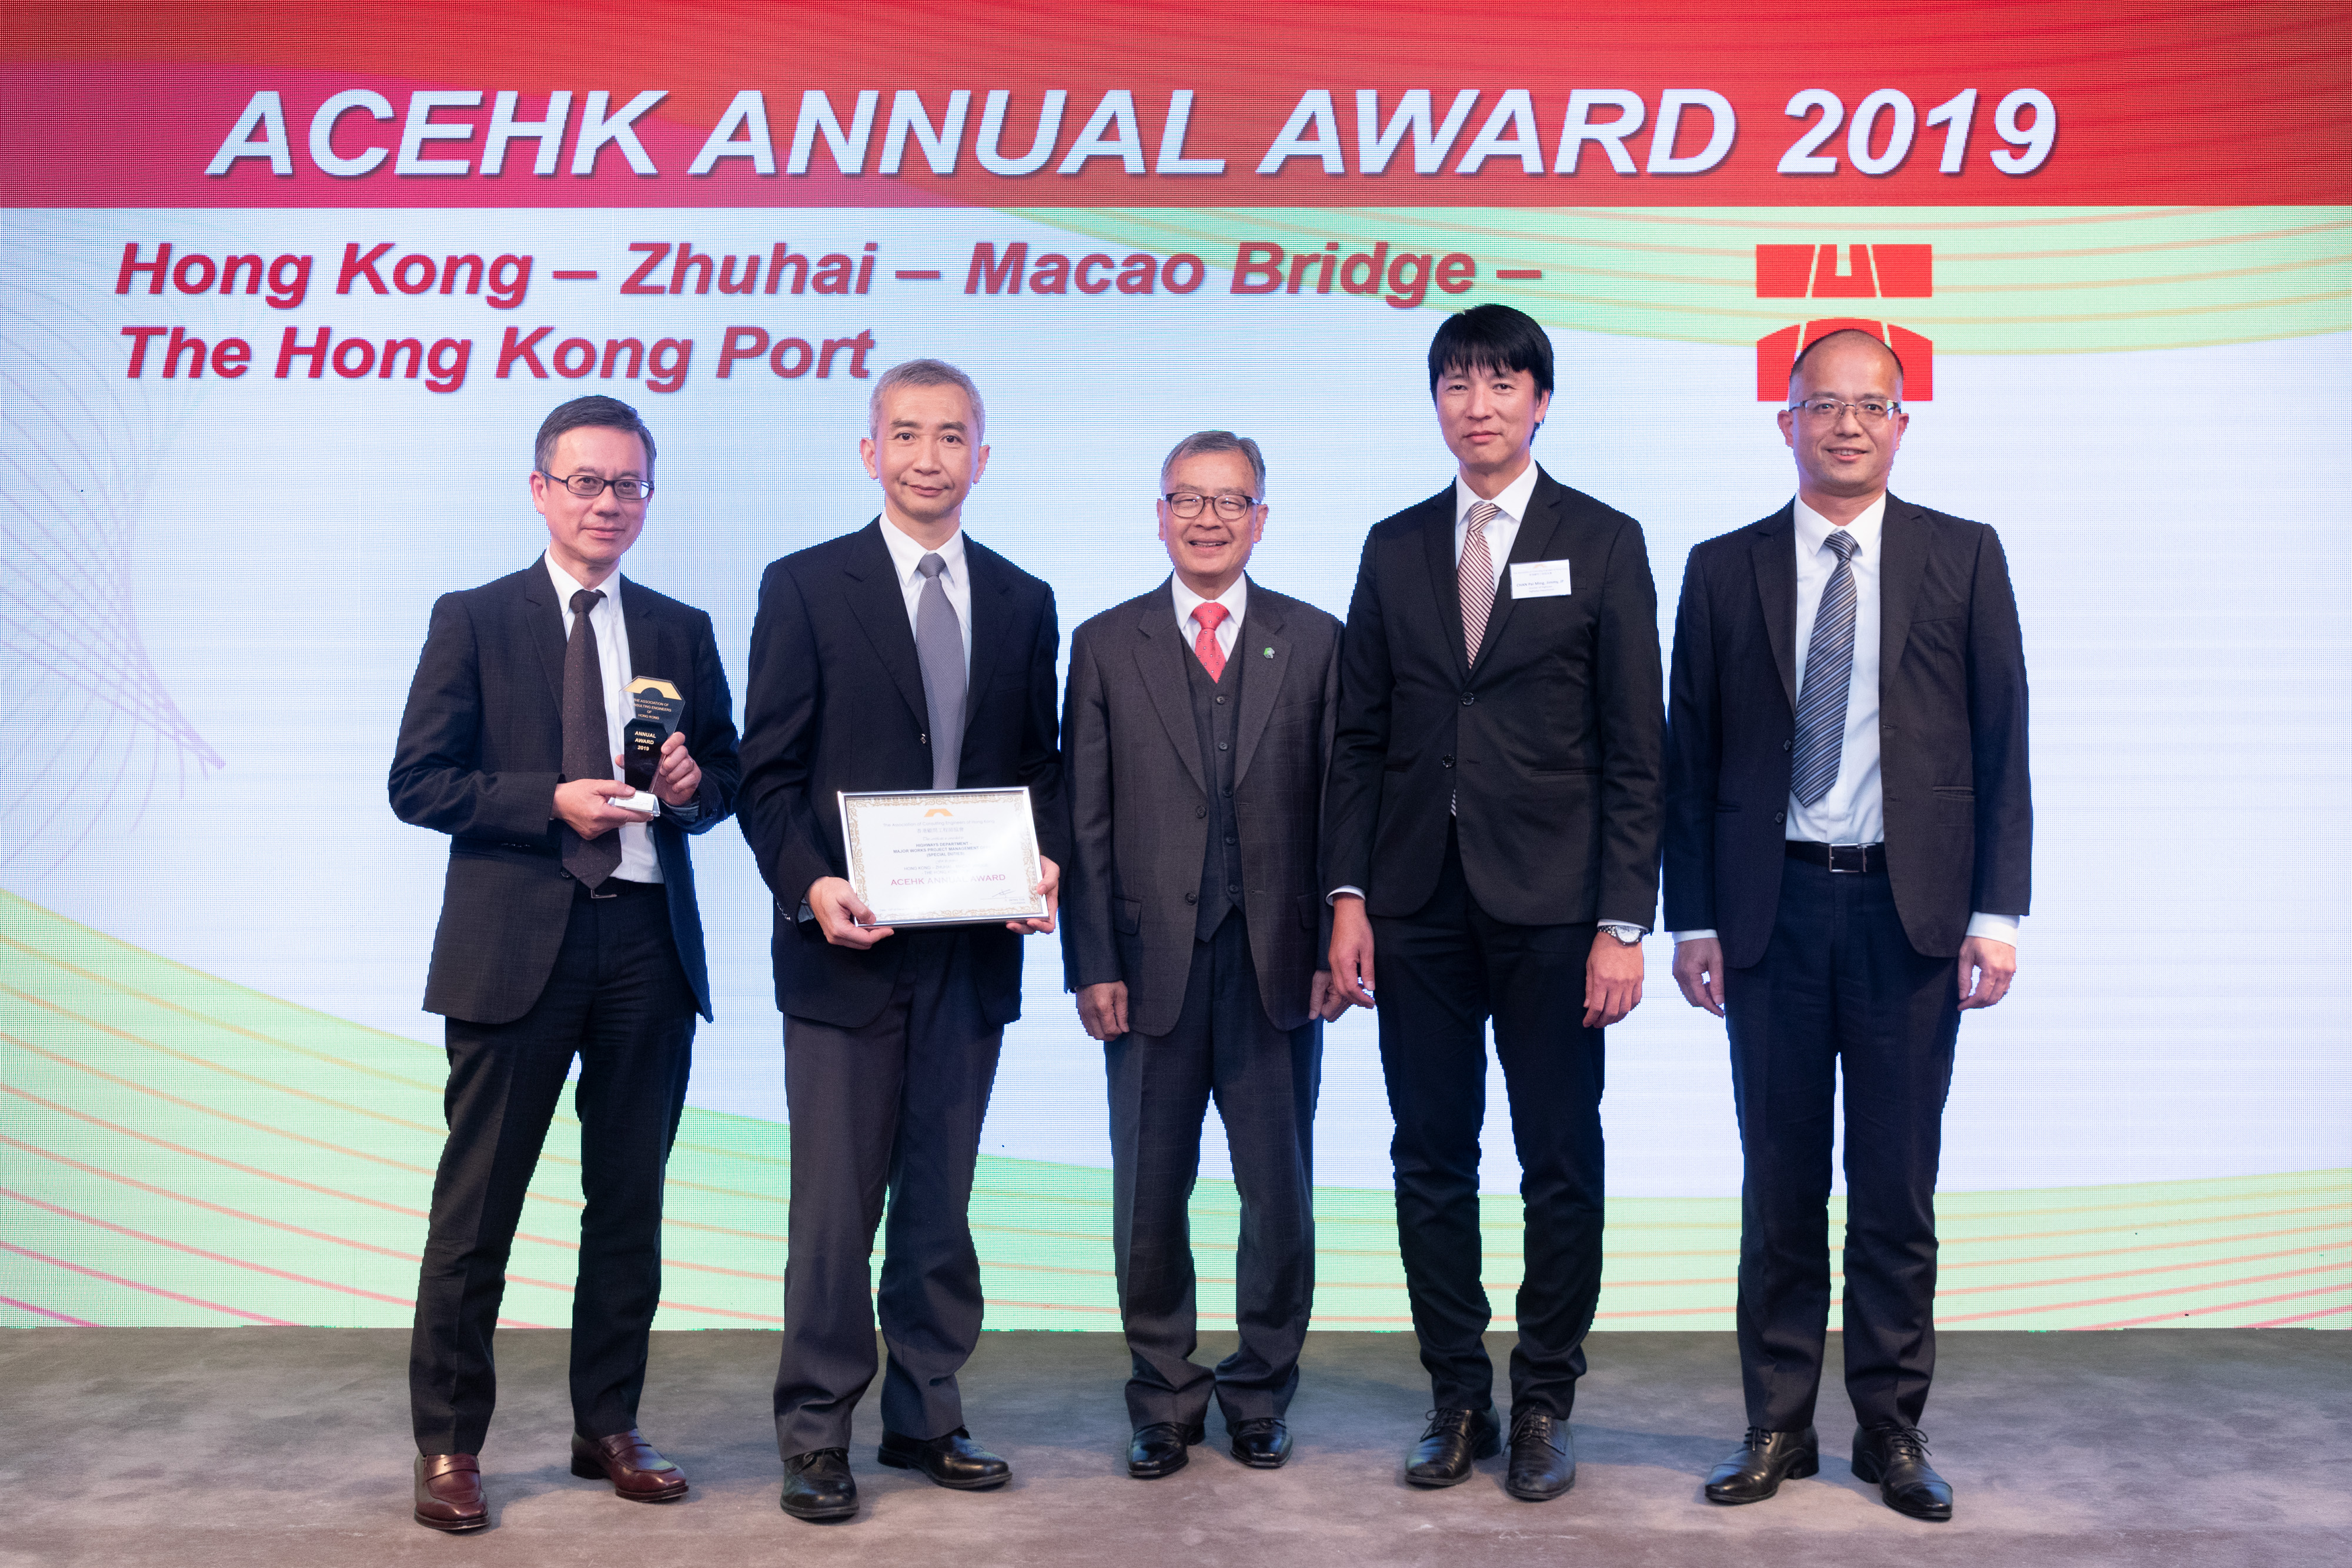 港珠澳大桥香港段香港口岸工程项目获颁顾问工程师协会年奖2019。